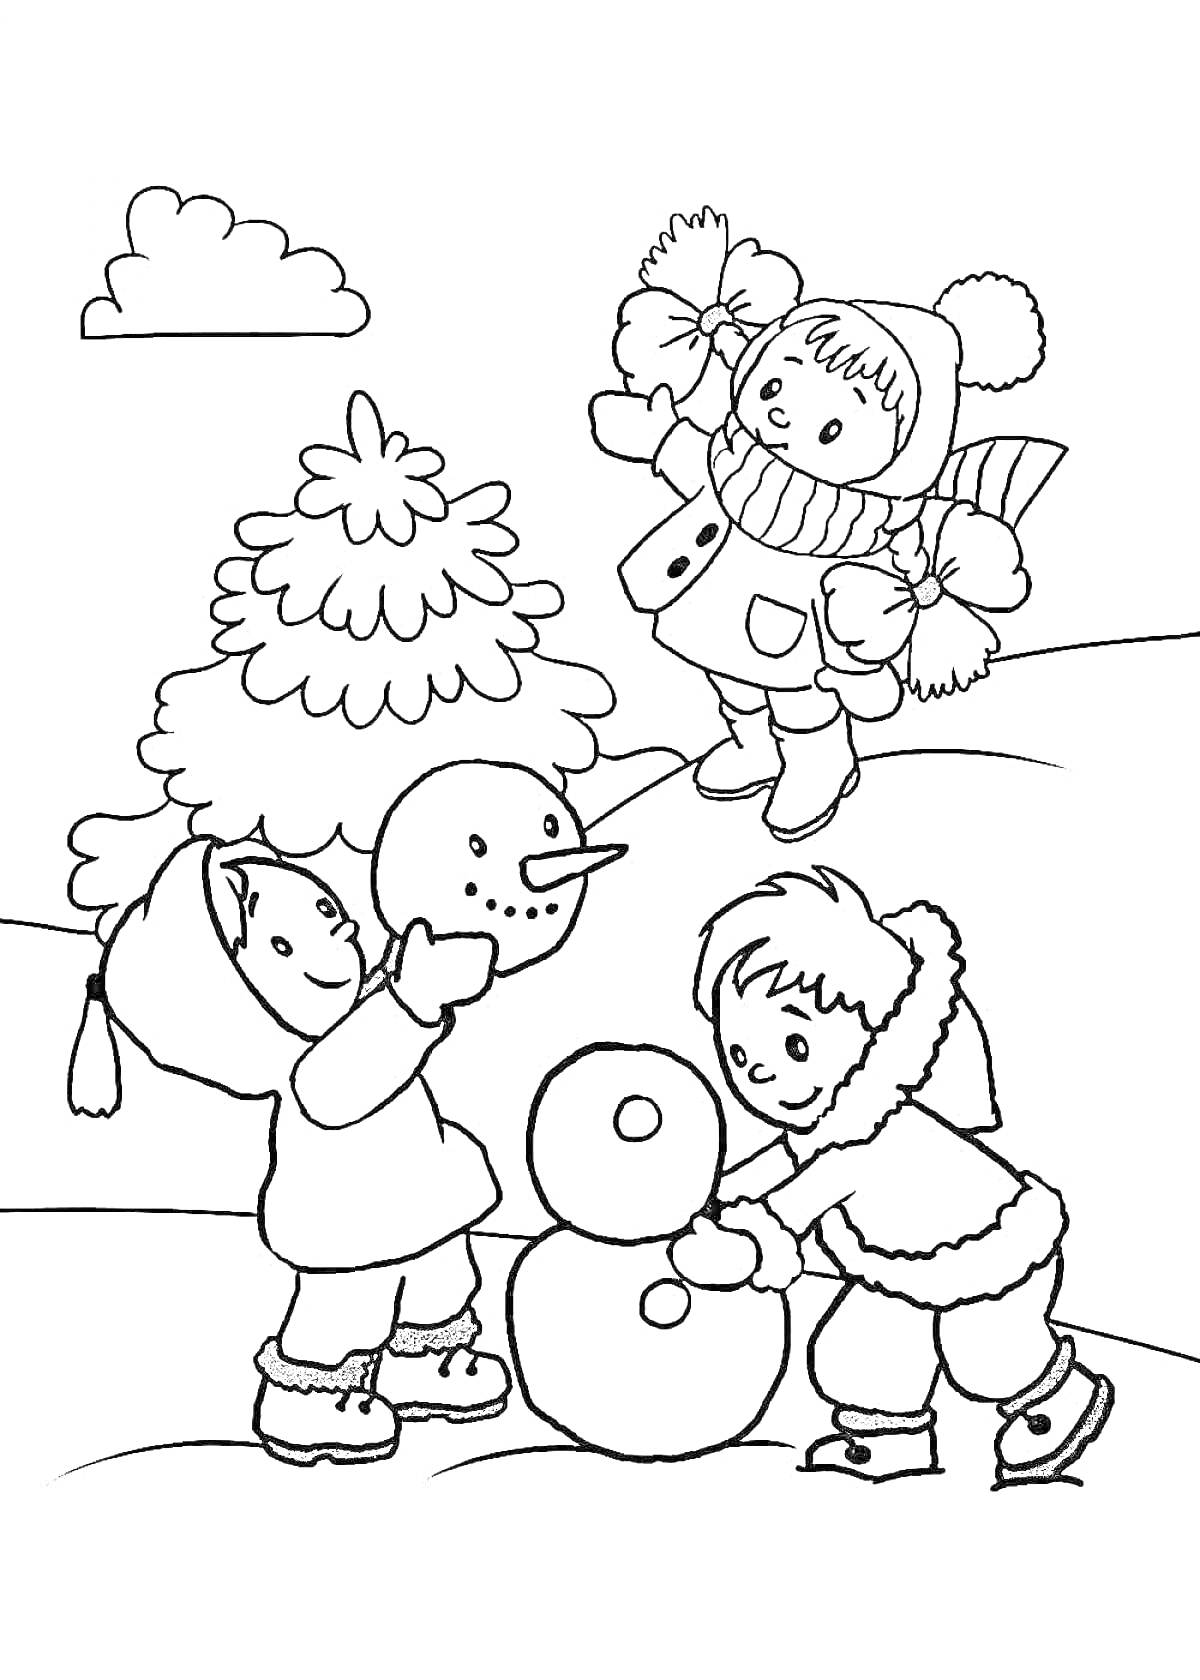 Дети лепят снеговика возле ёлки, один ребёнок в стороне с ведром и совком